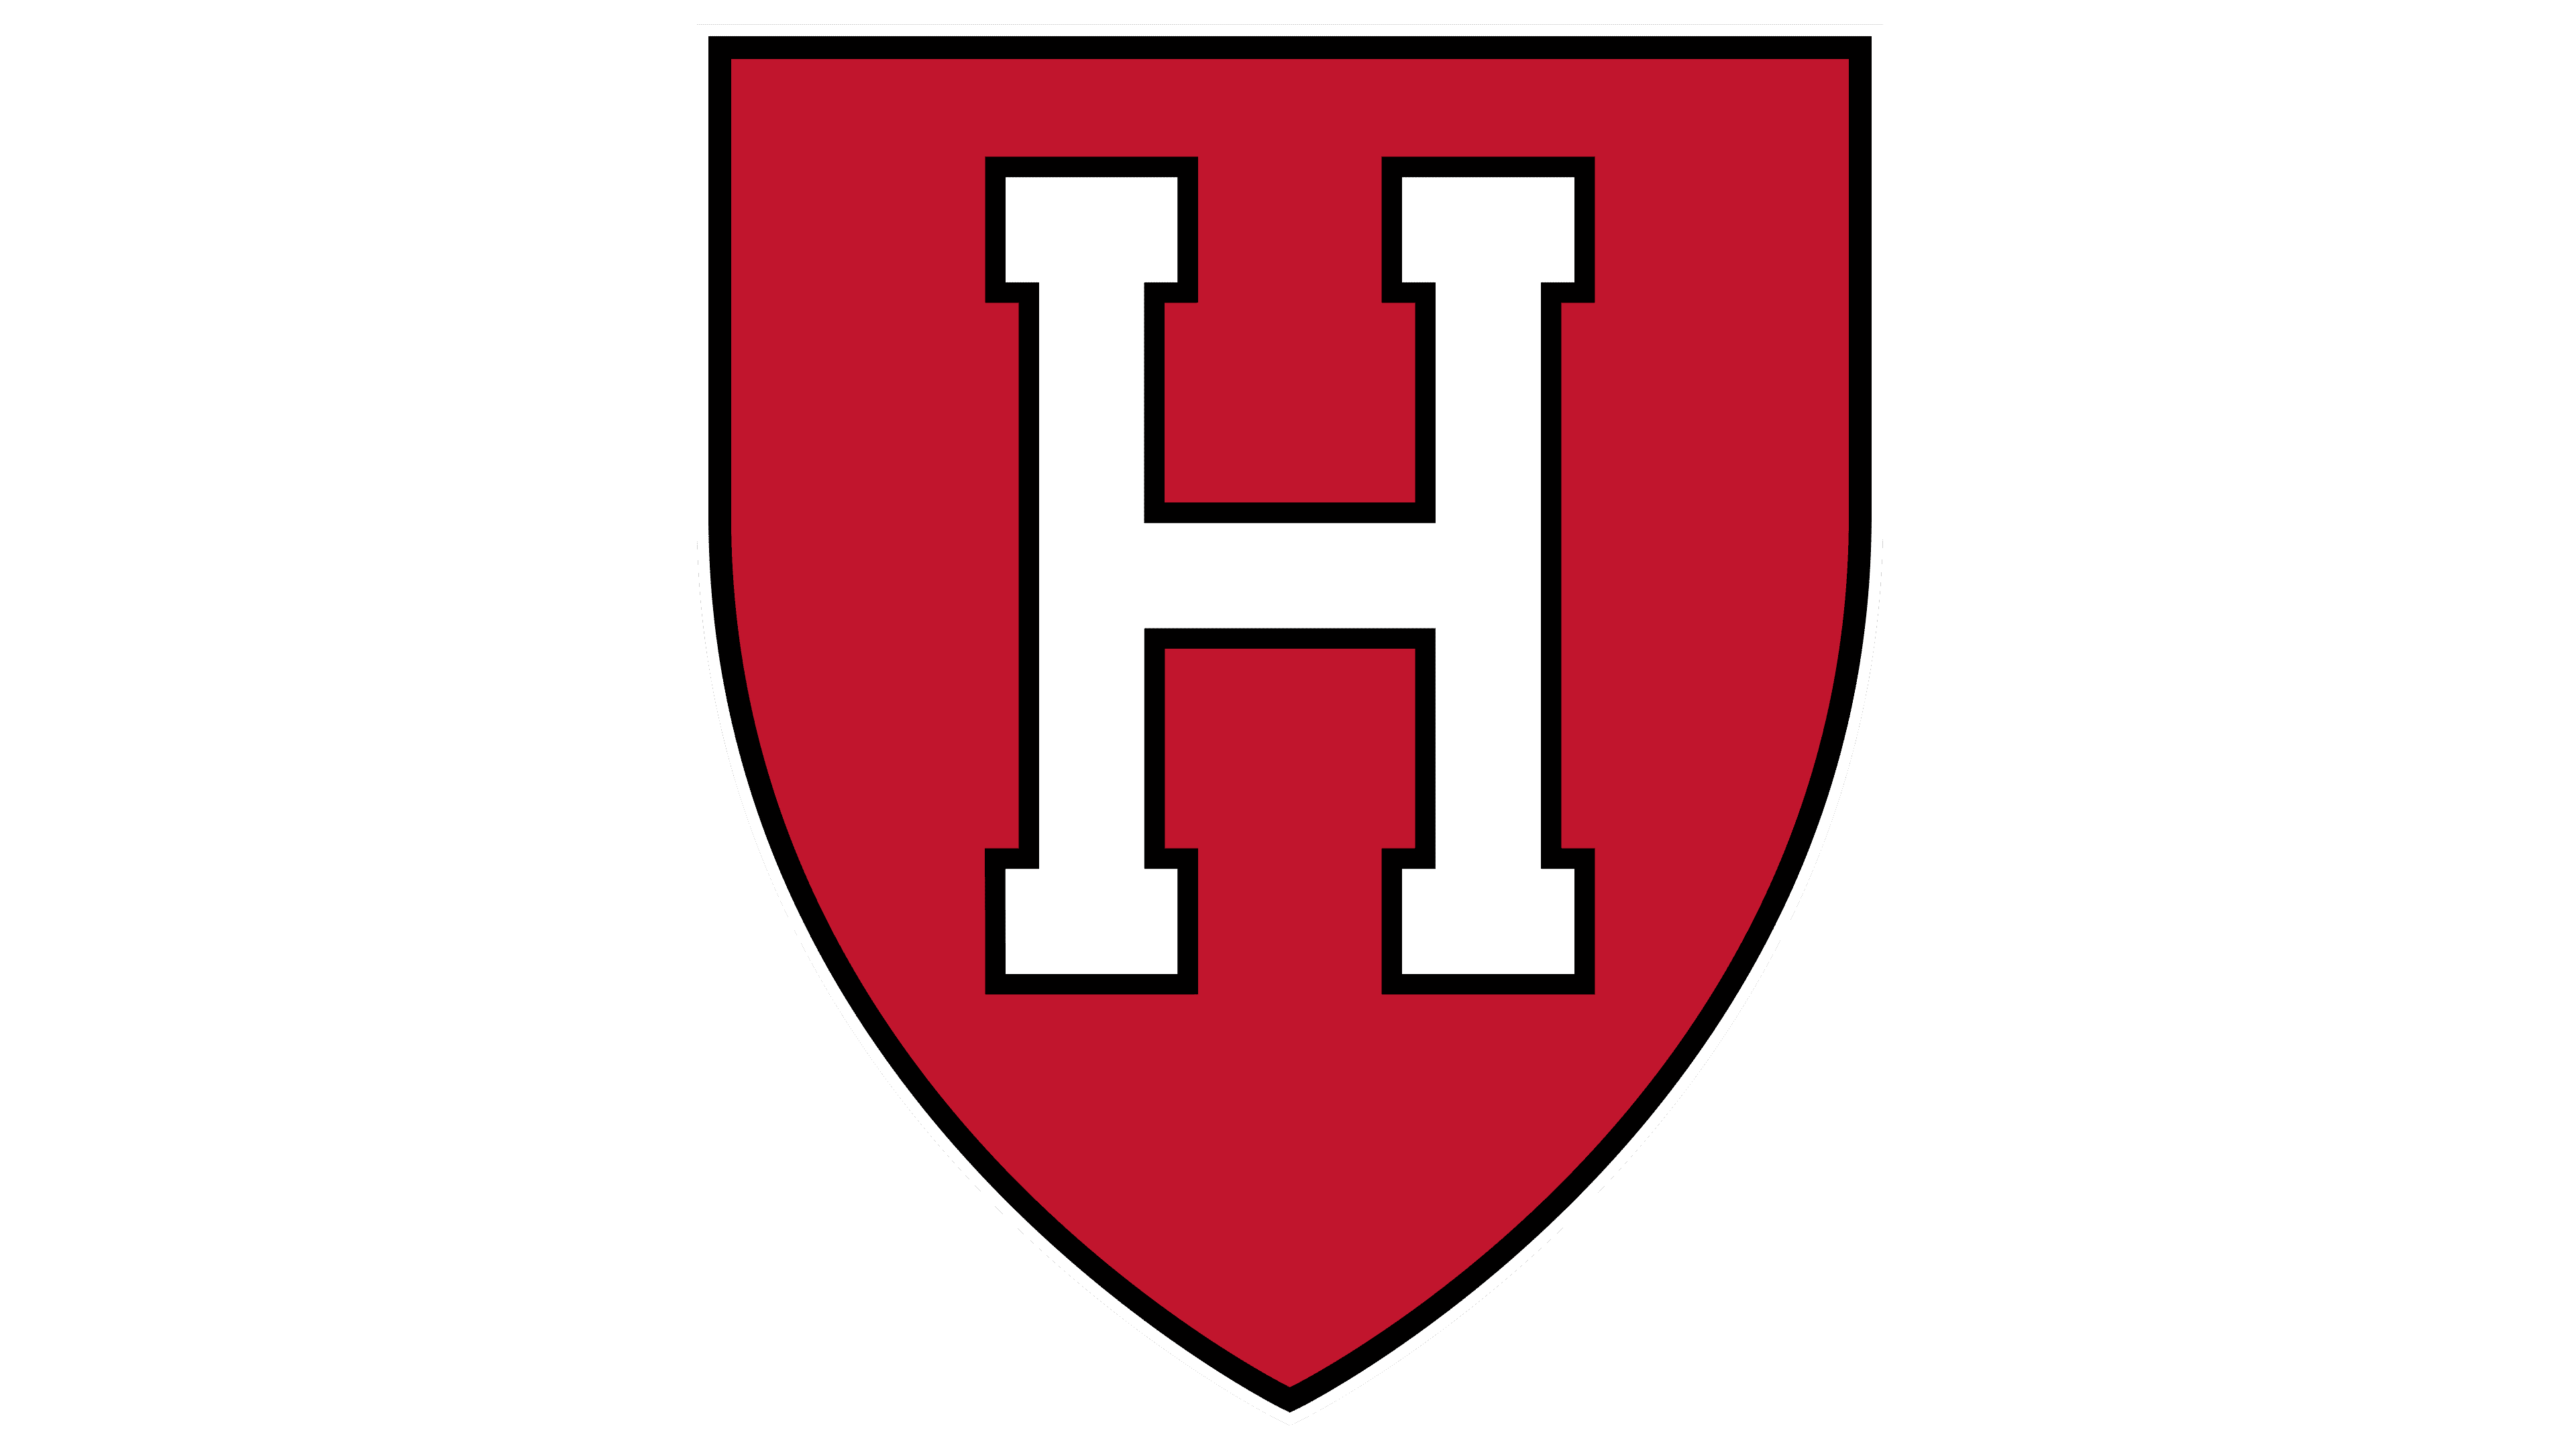 Harvard - Coming soon